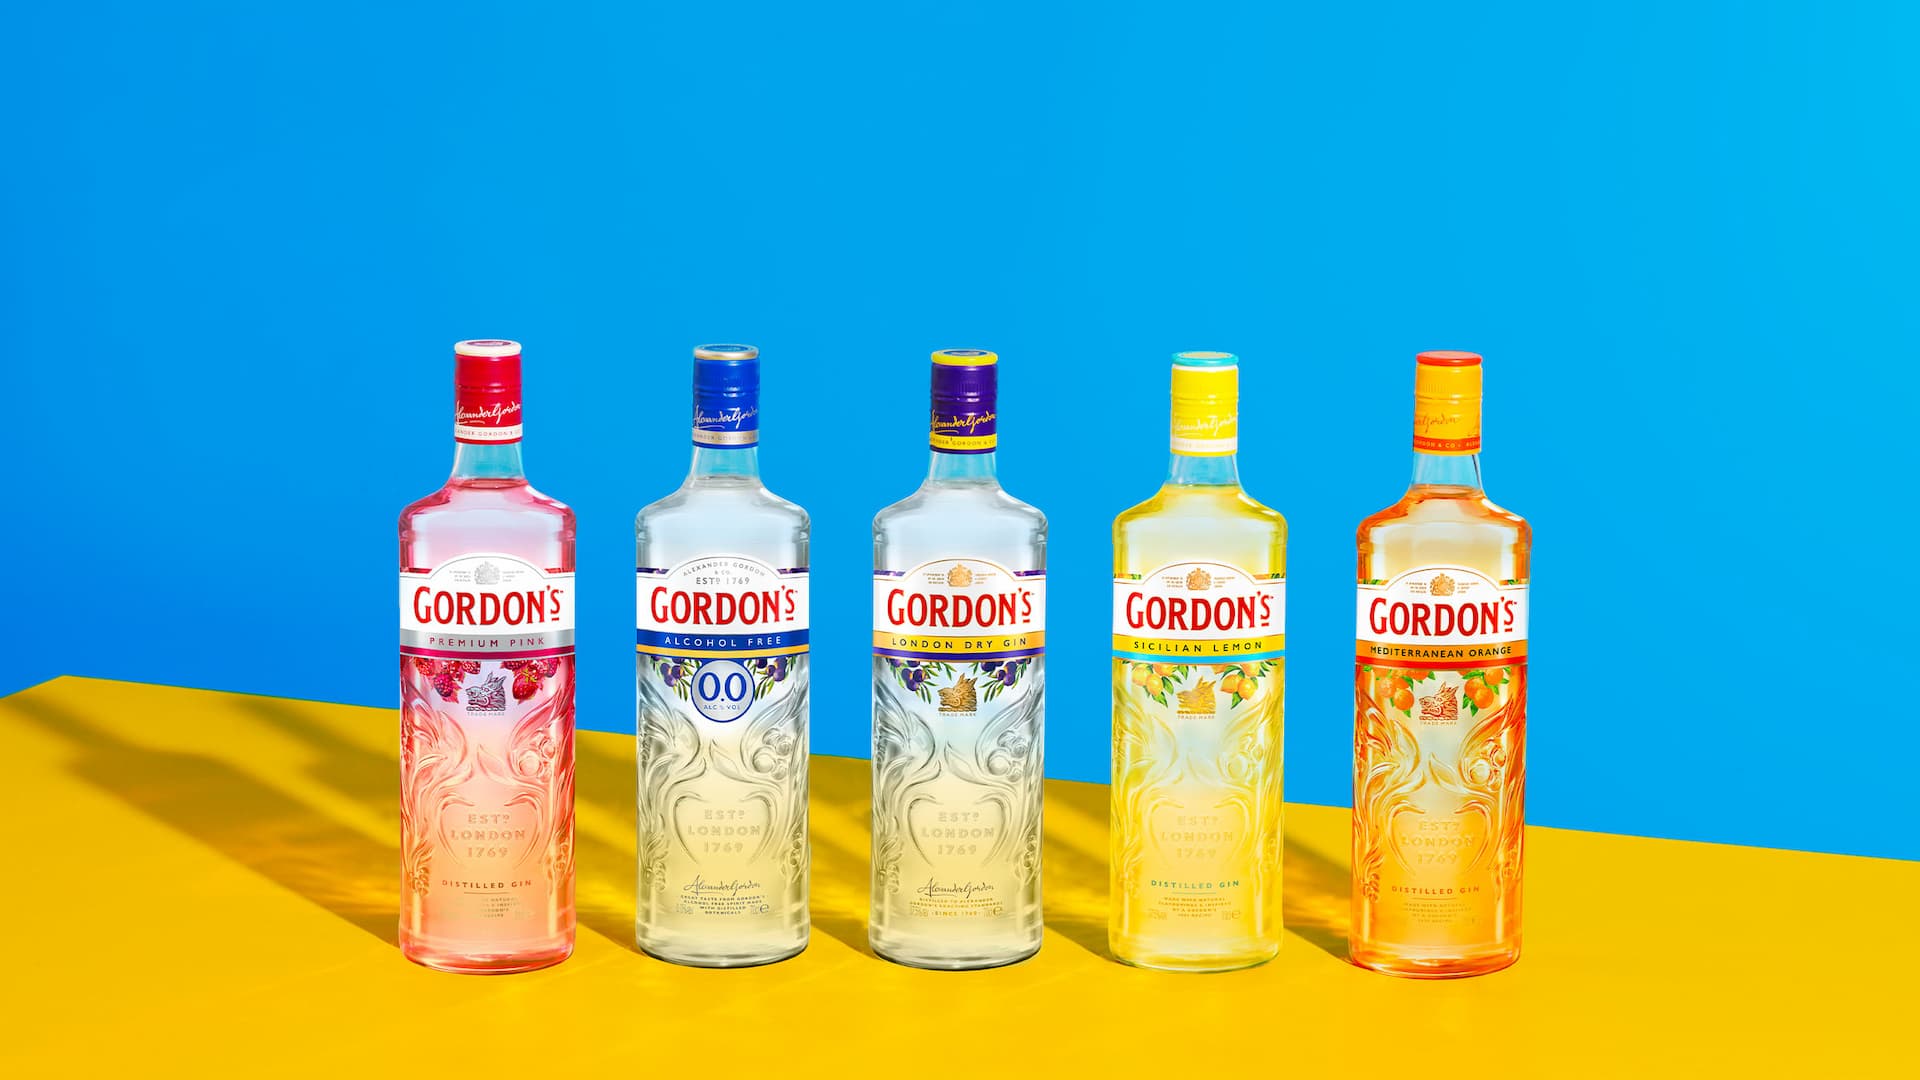 Seleção de garrafas de gin Gordon's em um fundo colorido